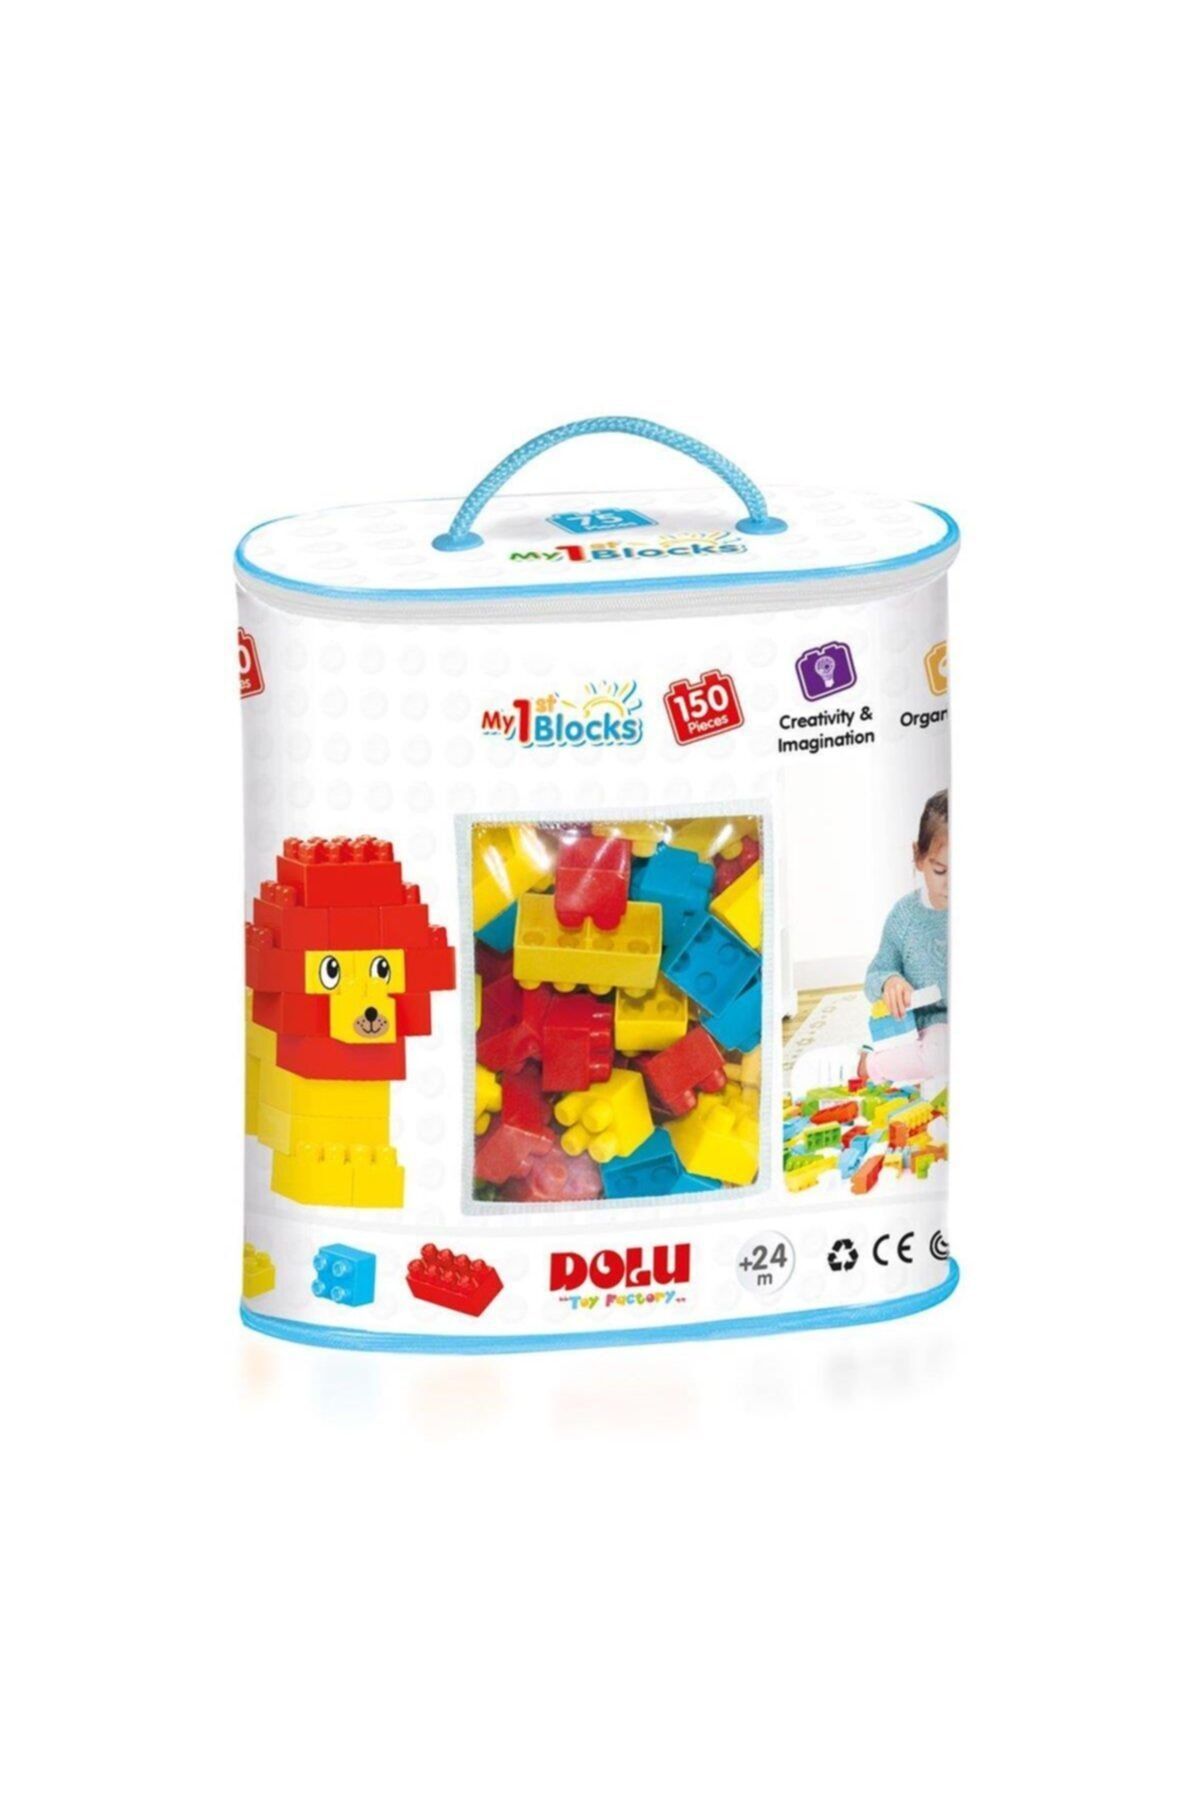 DOLU OYUNCAK Marka: 5017 Dolu Mini Bloklar 150 Parça Kategori: Bebek & Aktivite Oyuncakları